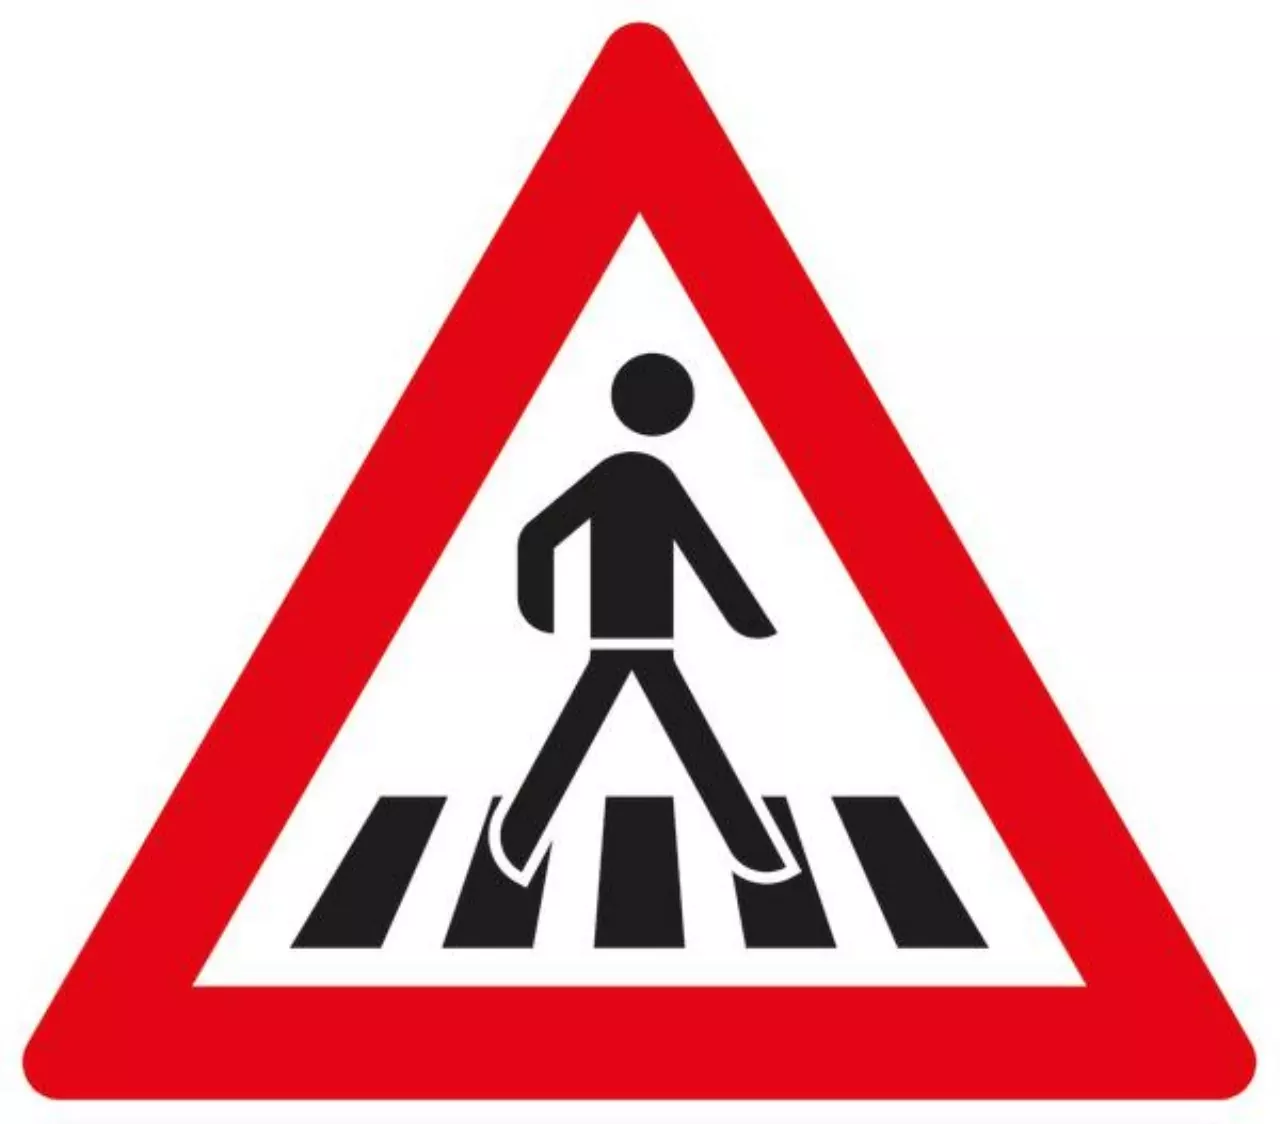 Verkehrszeichen 101-21 Fußgängerüberweg, Aufstellung links - SL 900 2 mm RA2